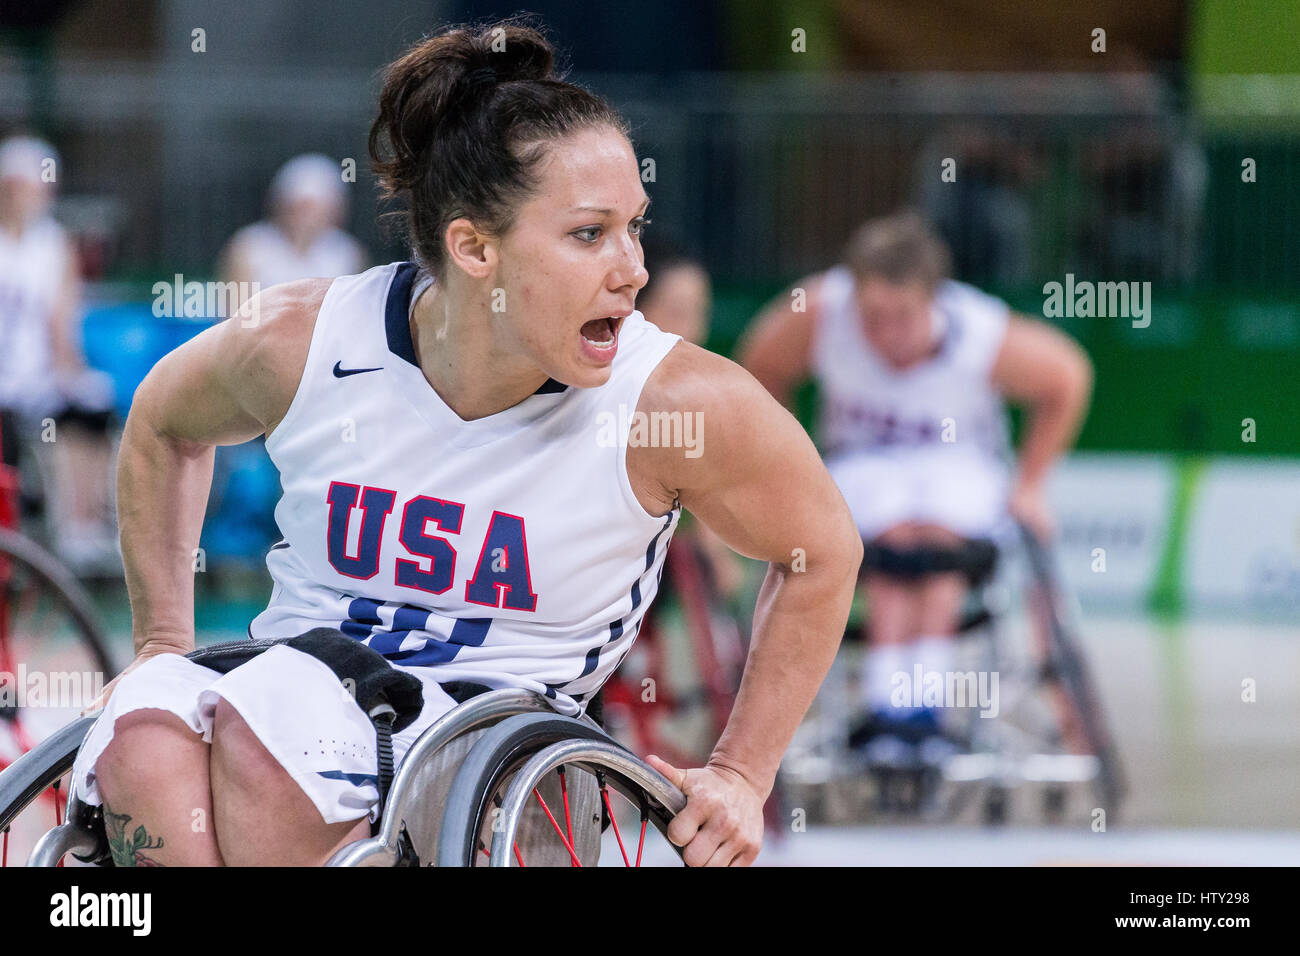 Au cours de la compétition de basket-ball en fauteuil roulant aux Jeux paralympiques d'été de Rio 2016 Banque D'Images